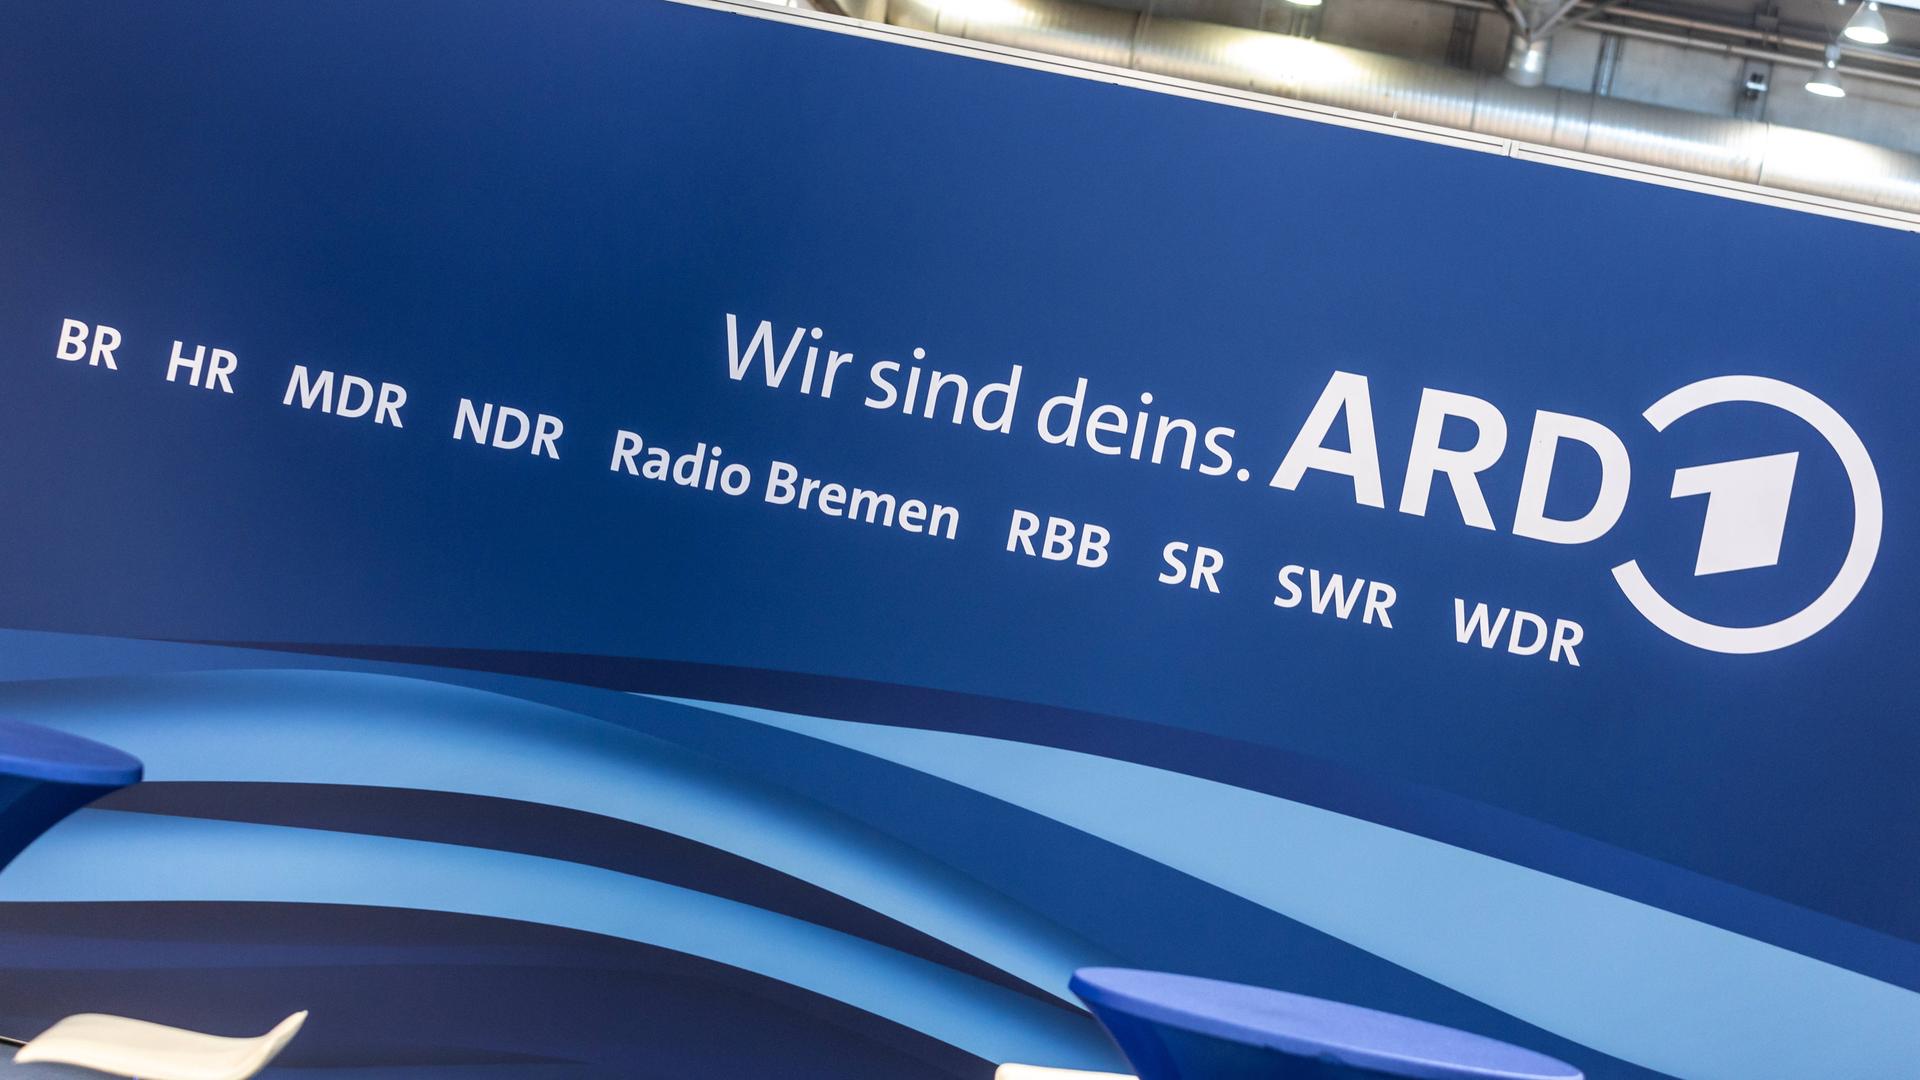 Wir sind Deins, das Logo der ARD Arbeitsgemeinschaft der öffentlich rechtlichen Rundfunksender Deutschlands mit den Kürzeln der Sendeanstalten BR, HR, MDR NDR, Radio Bremen, RBB, SR SWR und WDR